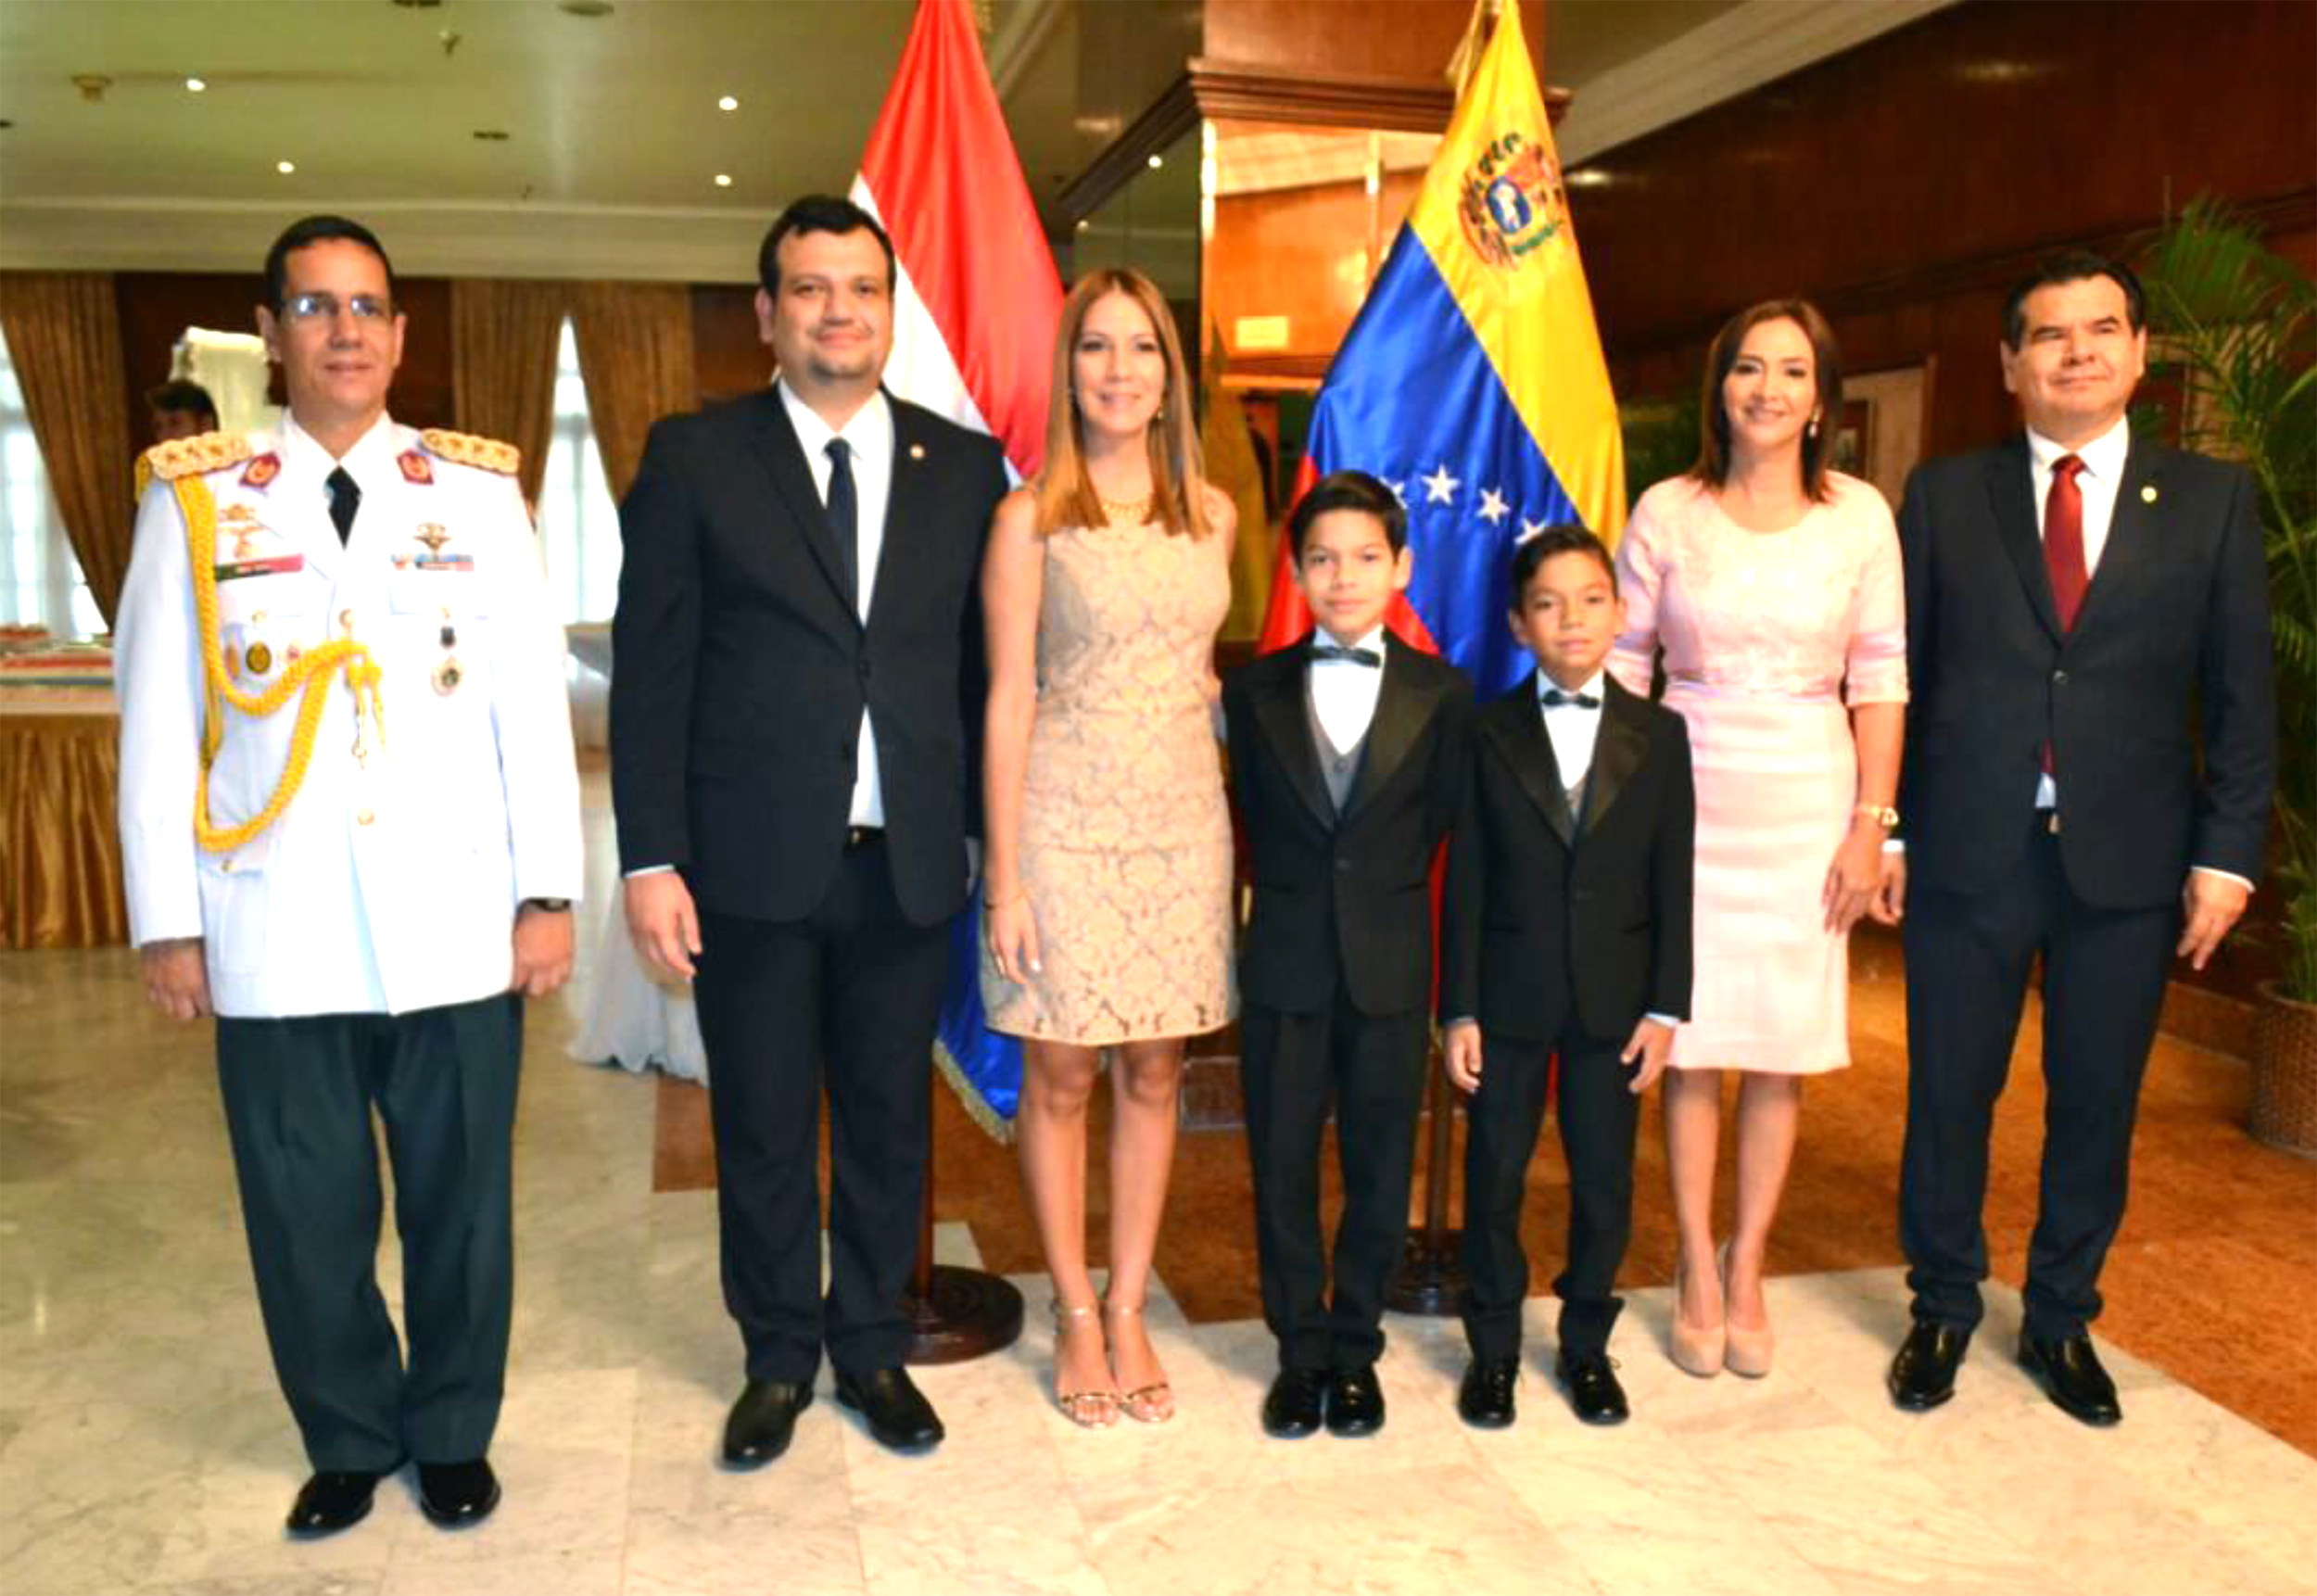 La Embajada del Paraguay en Venezuela festejó la Fiesta Patria con una ofrenda floral y recepción oficial